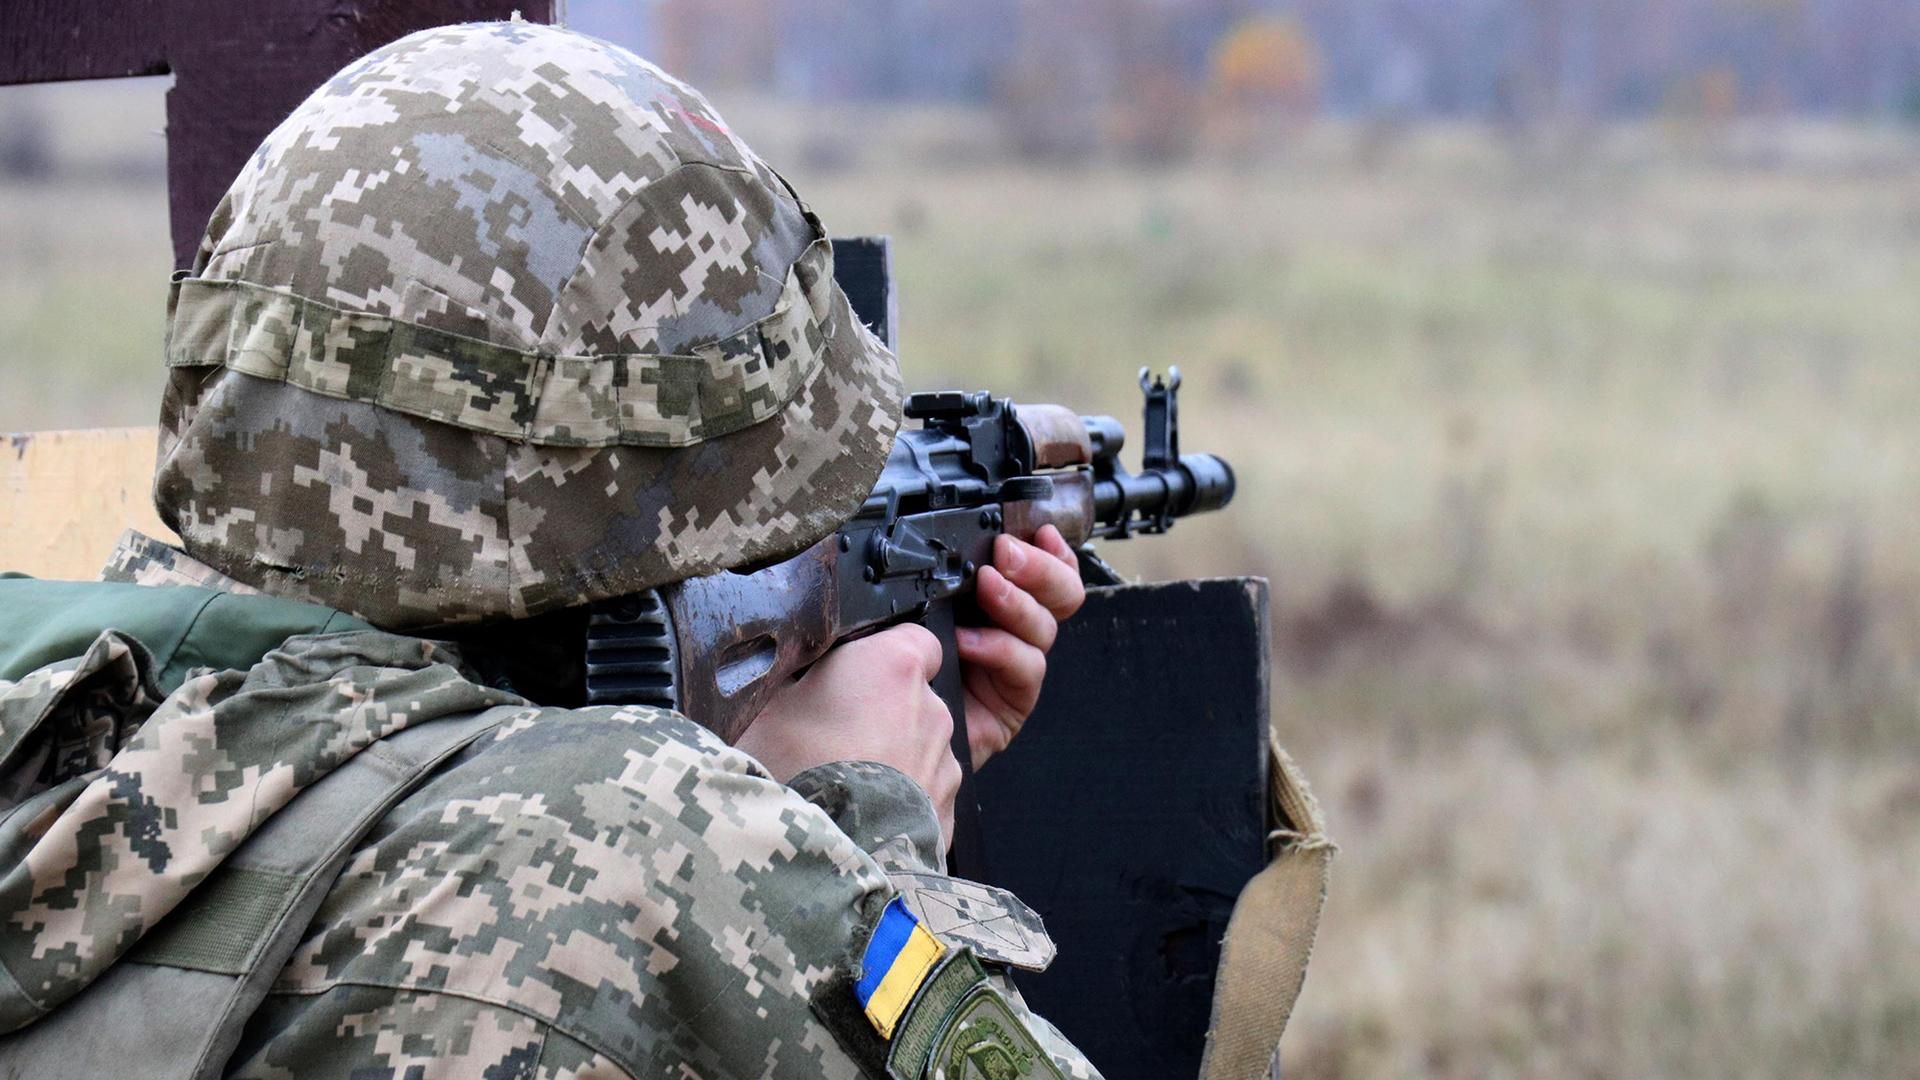 Российские боевики виманюють украинских бойцов, чтобы сделать мишенями